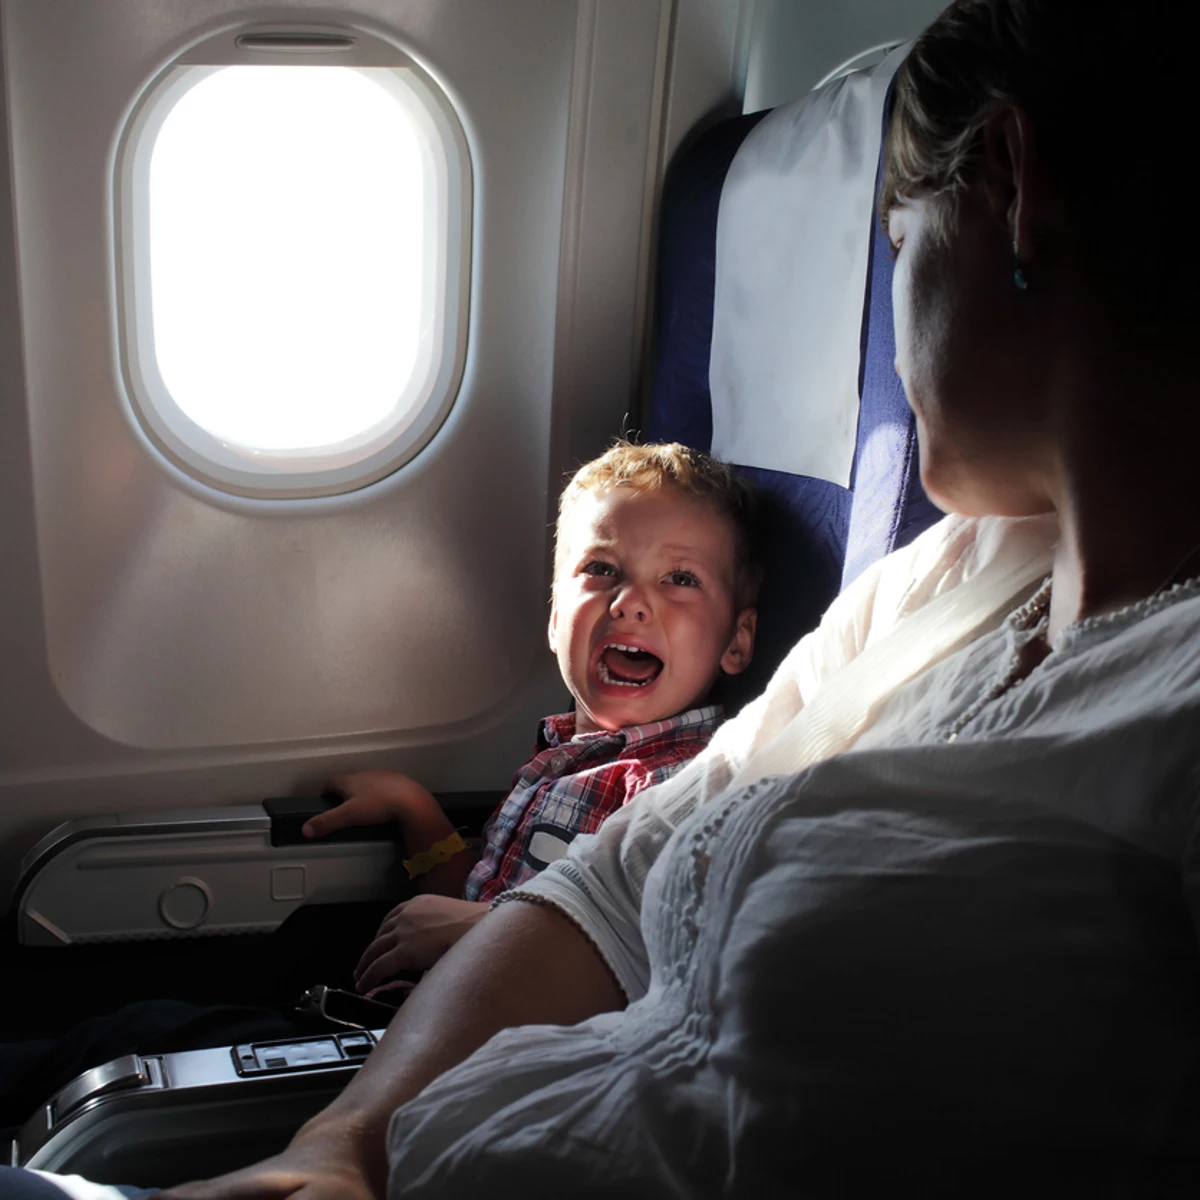 Volar en avión con un bebé: consejos para planificar un viaje más